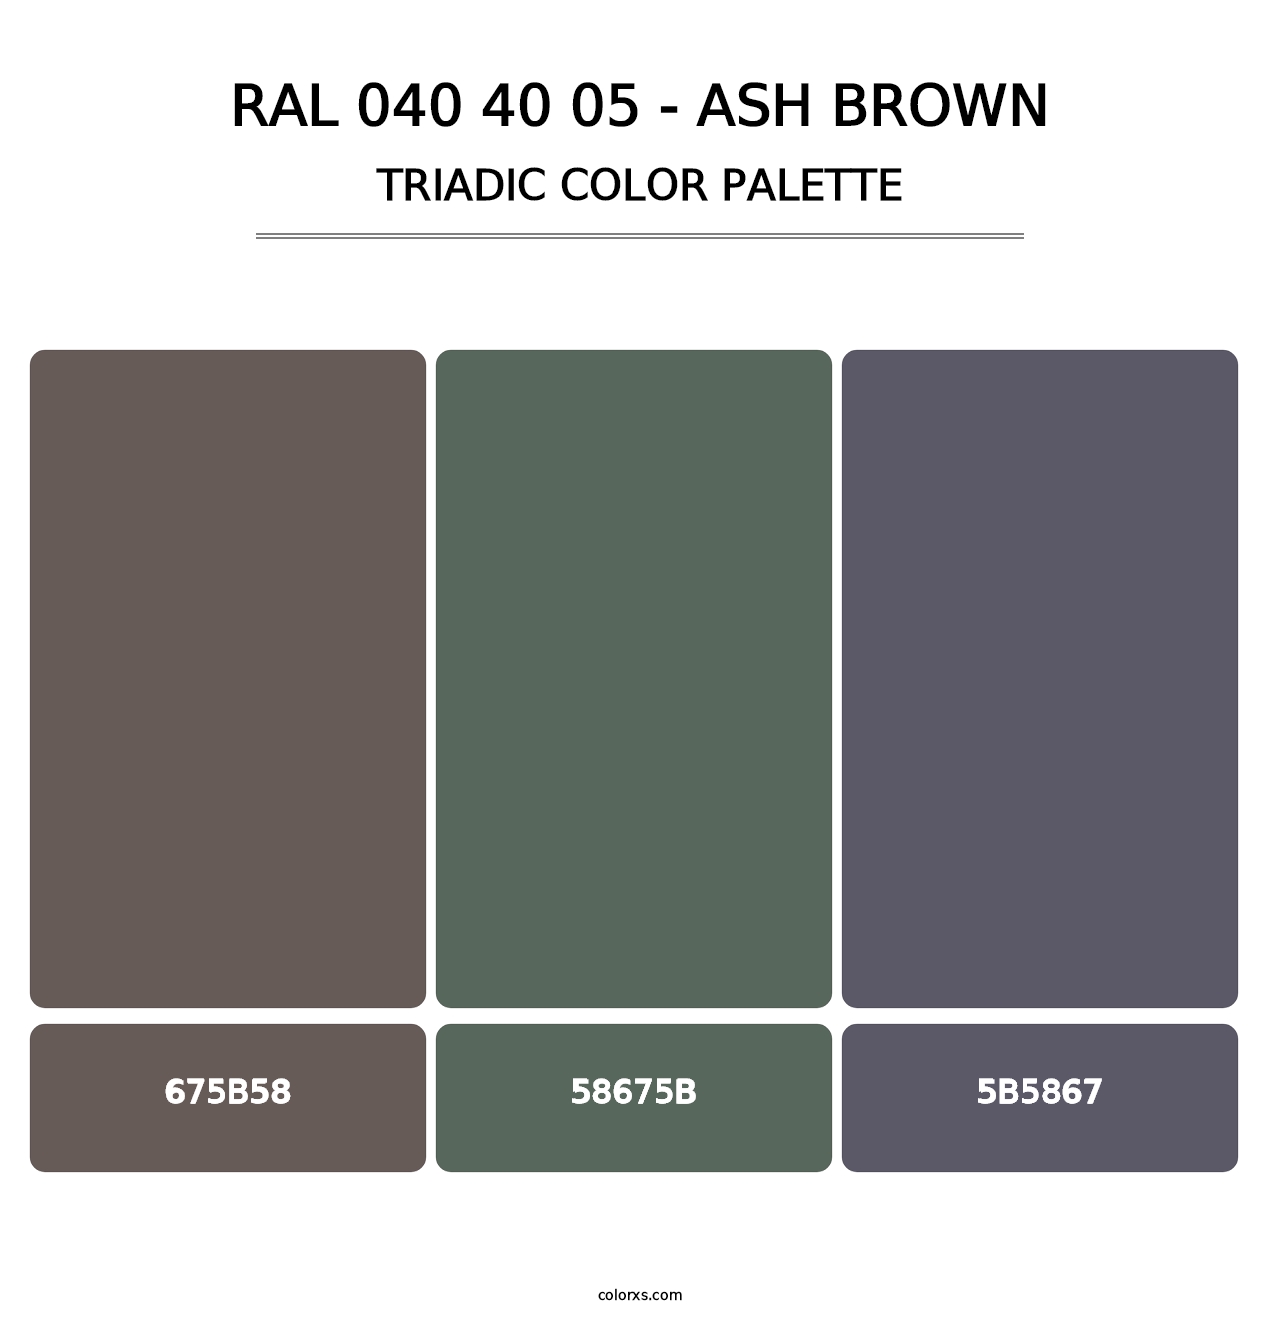 RAL 040 40 05 - Ash Brown - Triadic Color Palette